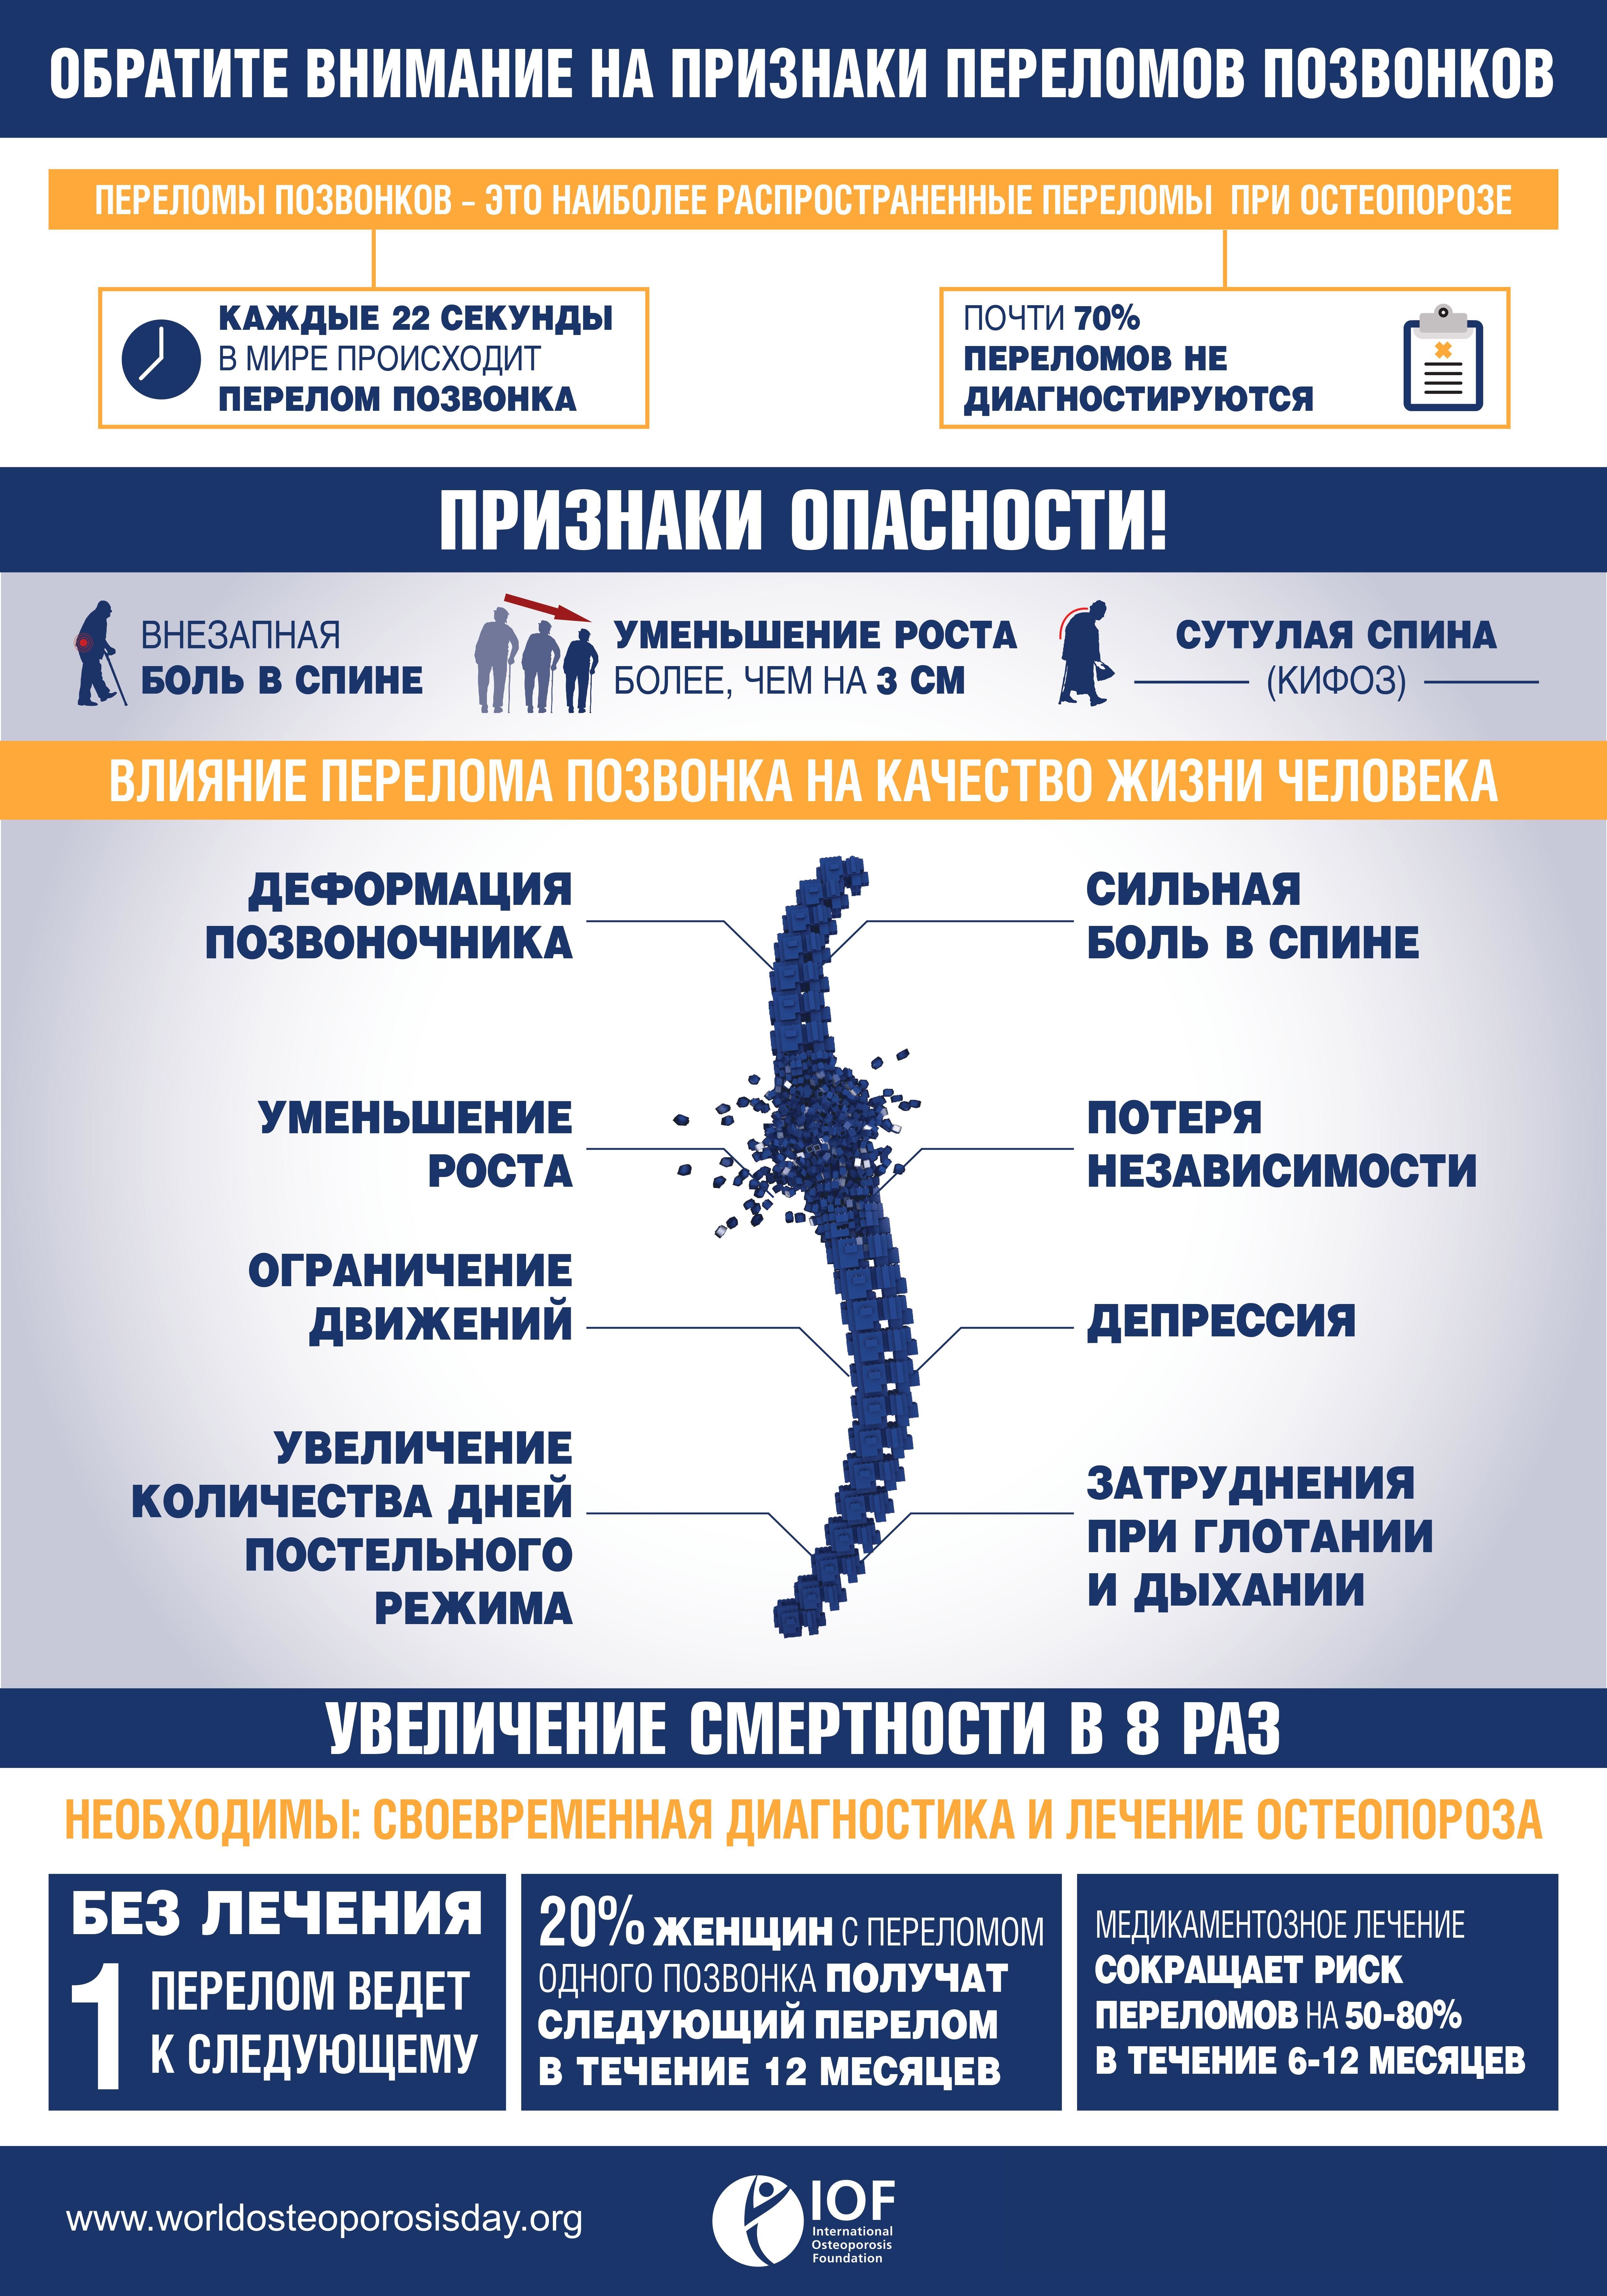 Москвичи и гости столицы приглашаются пройти диагностику остеопороза в январе